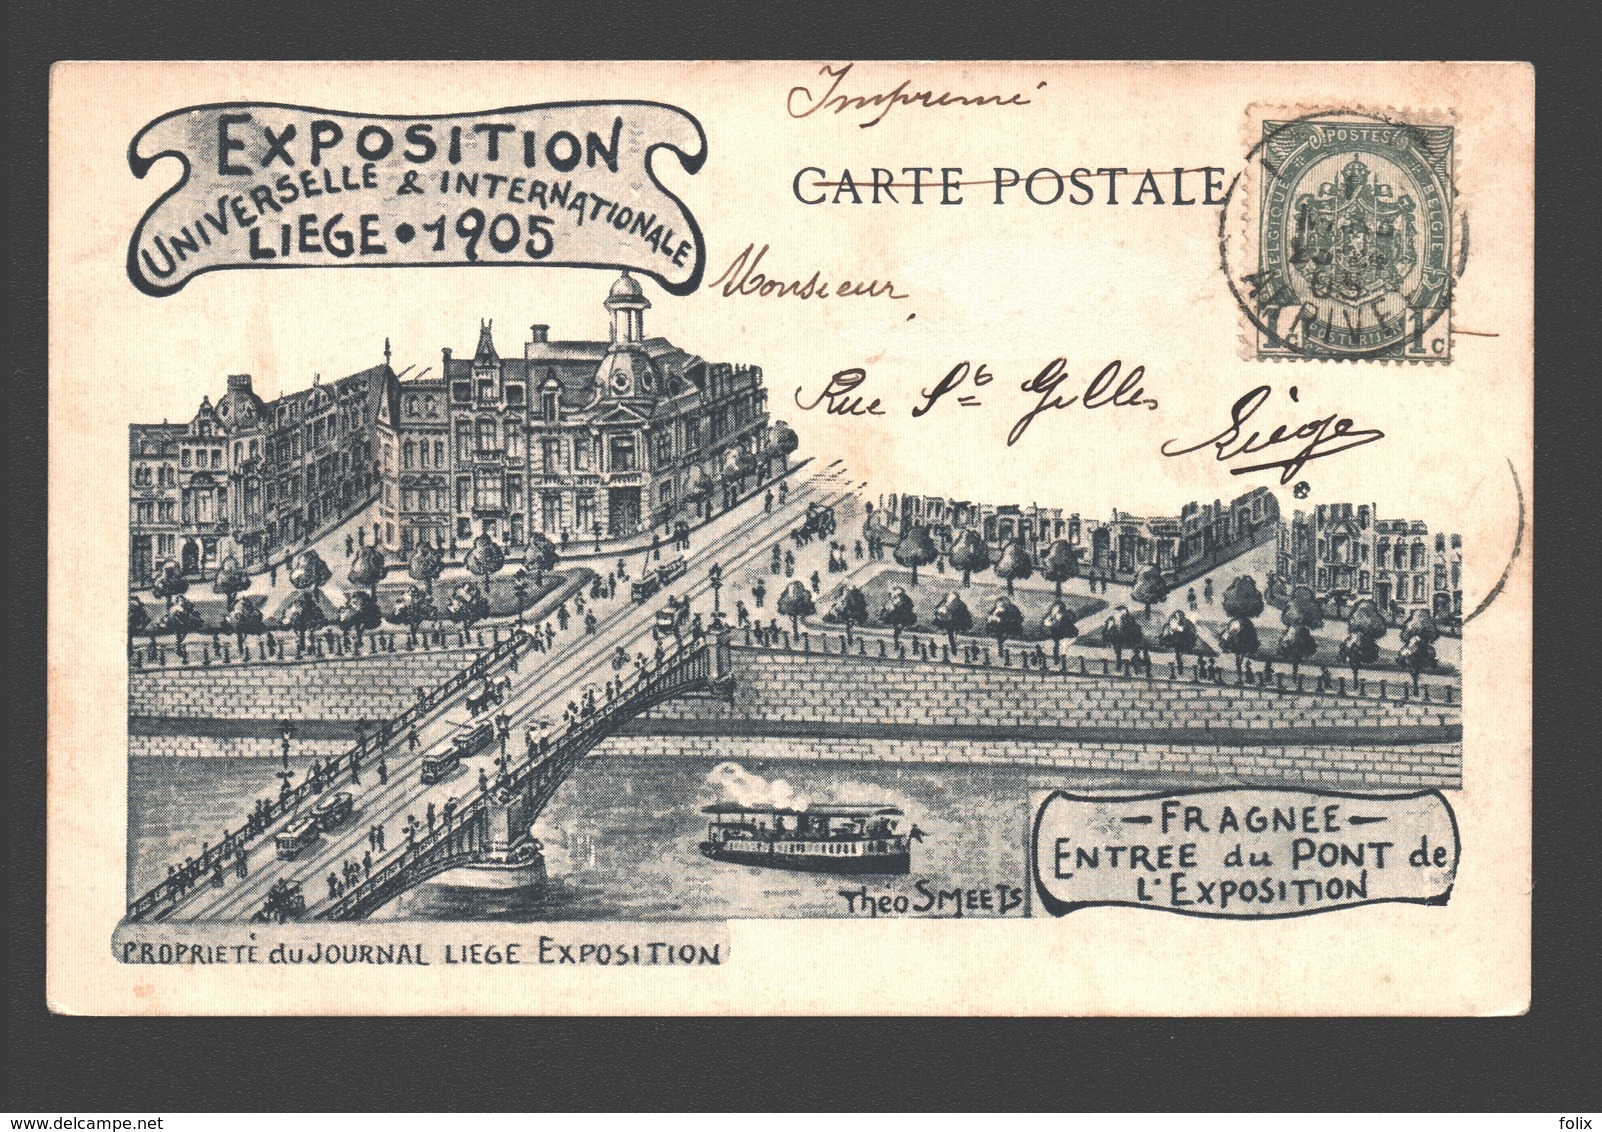 Liège - Exposition Universelle & Internationale Liège 1905 - Fragnée - Entrée Du Pont De L'Exposition - Dos Simple - Luik